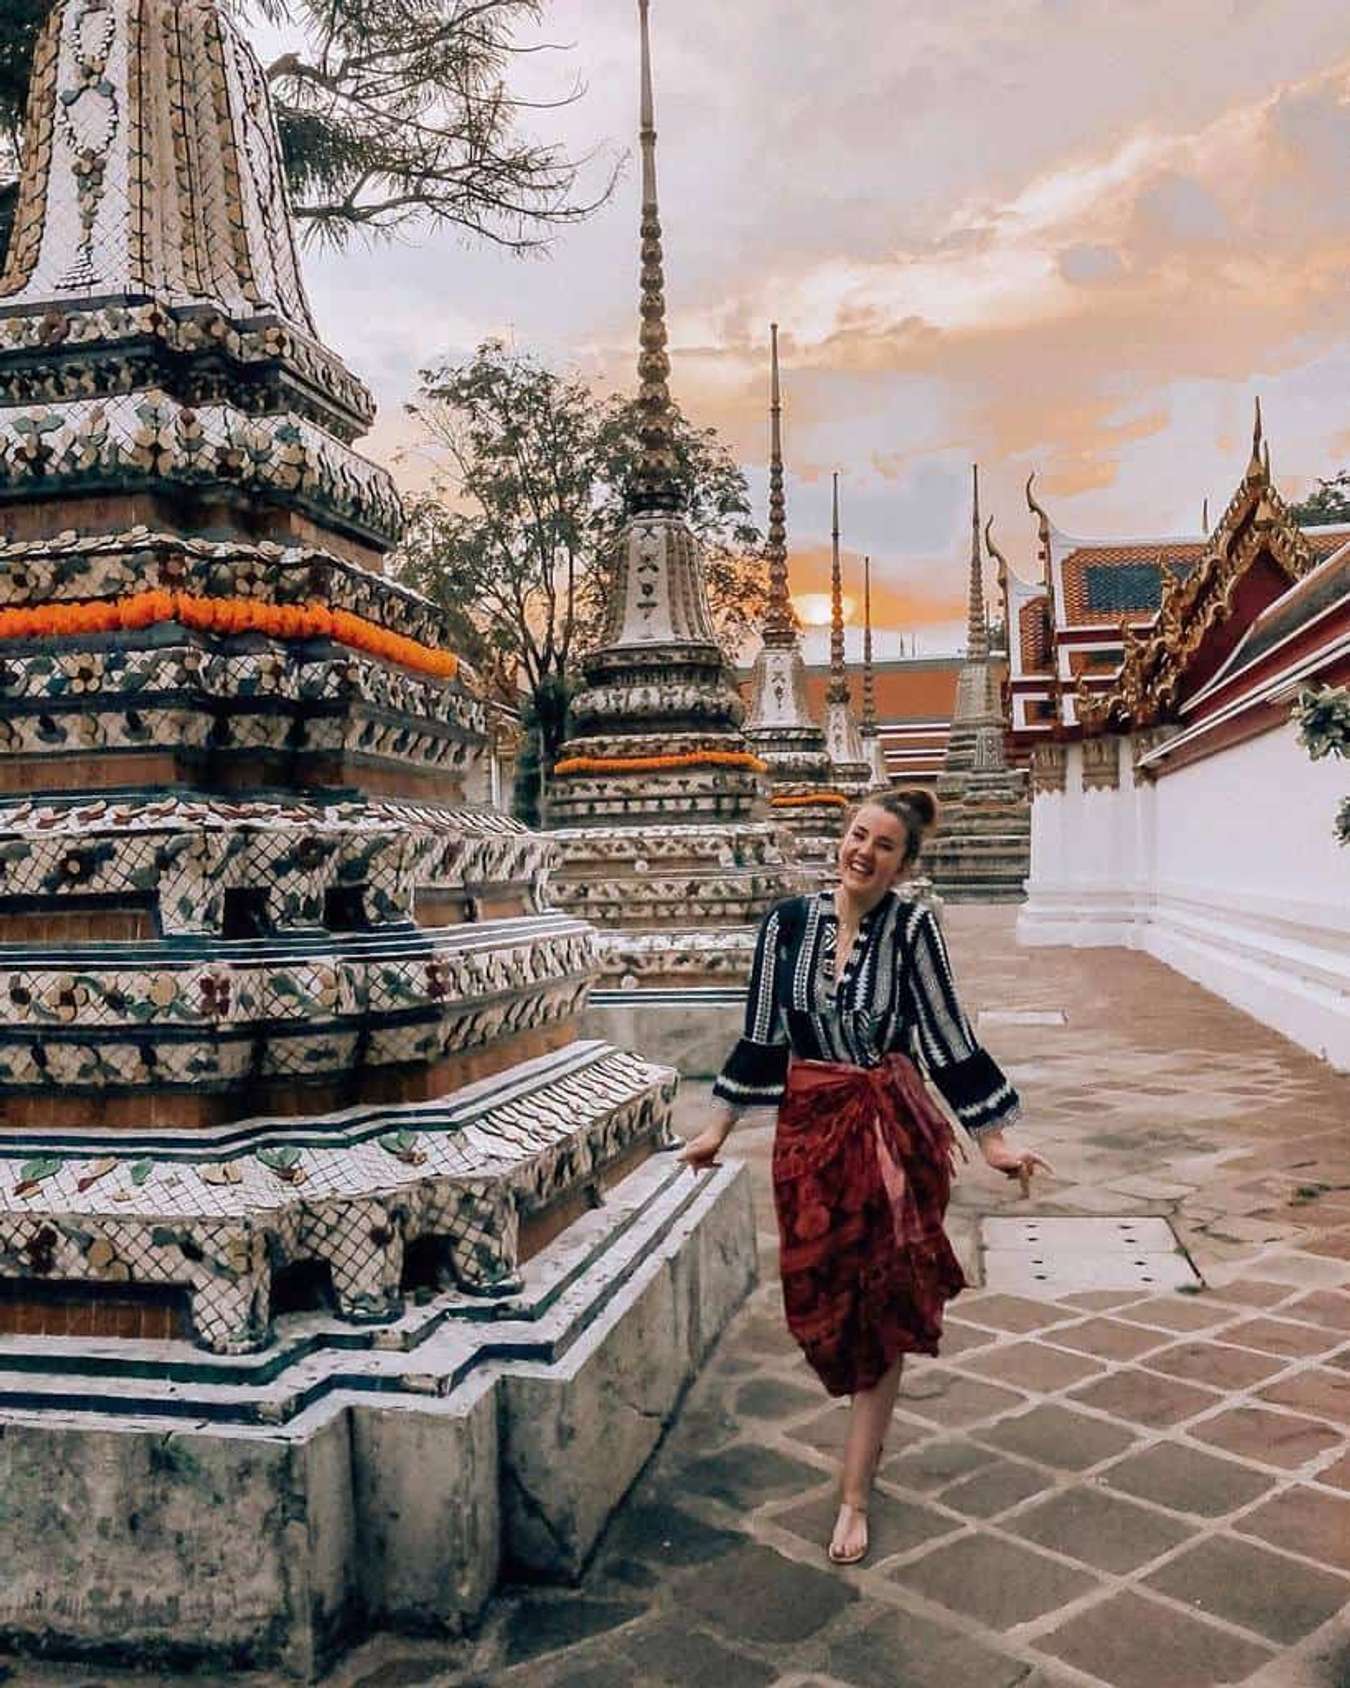 Chùa Thái Lan 